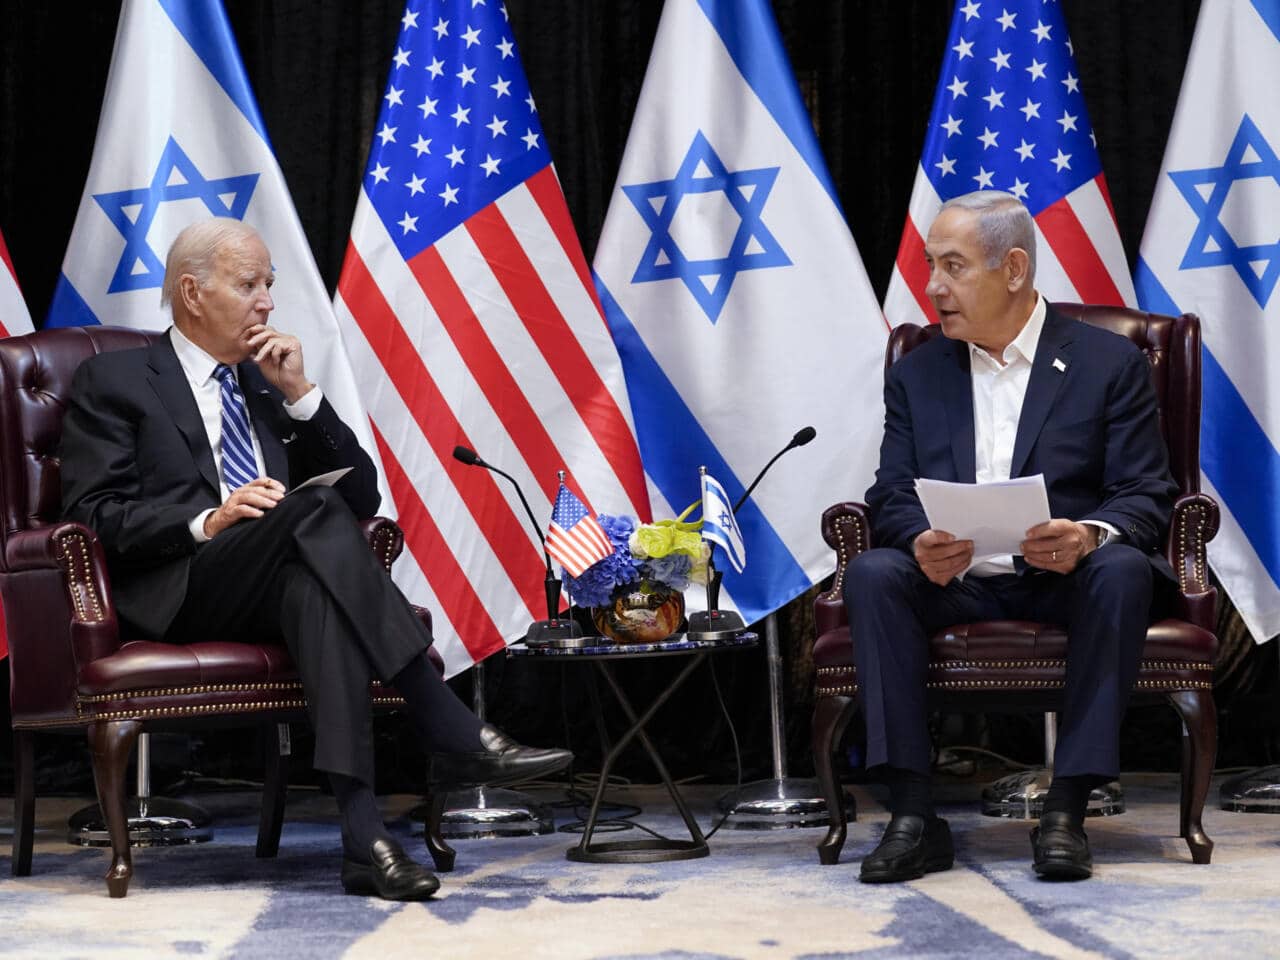 Le président américain demande à Israël de permettre «sans délai» l’accès à l’aide humanitaire à Gaza